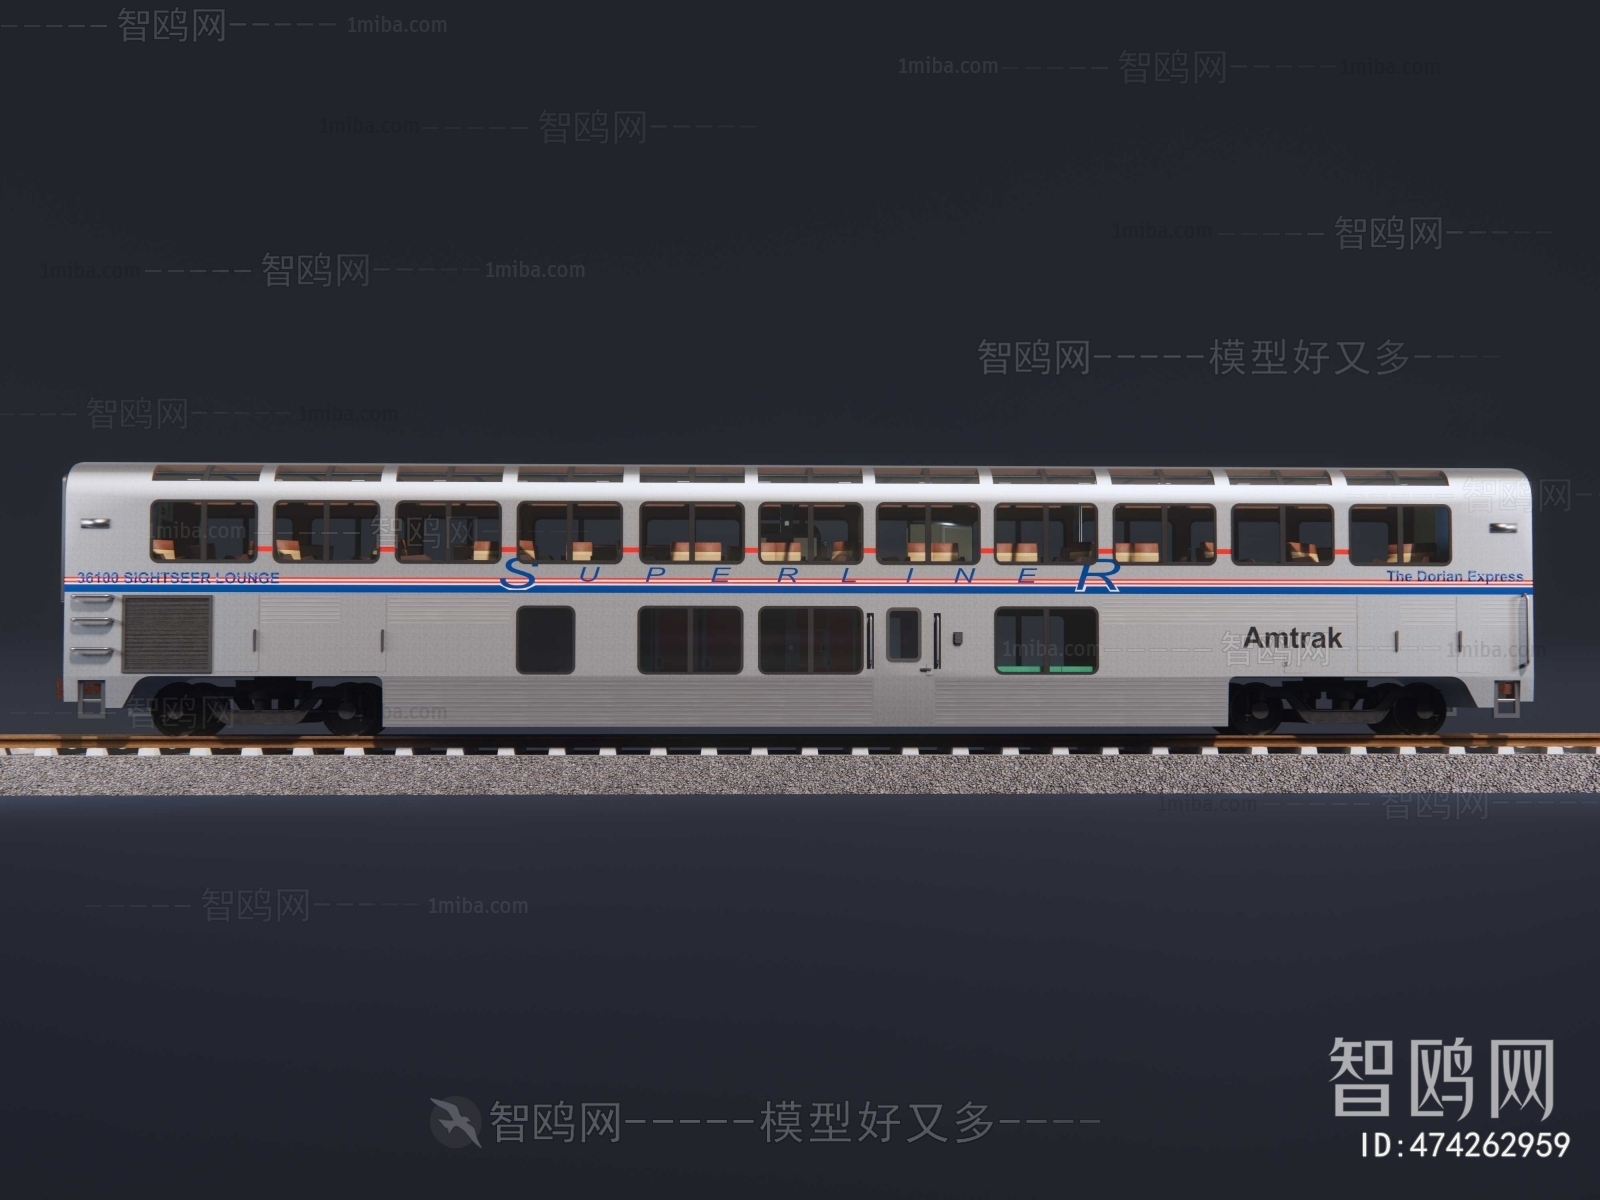 Modern Rail Car